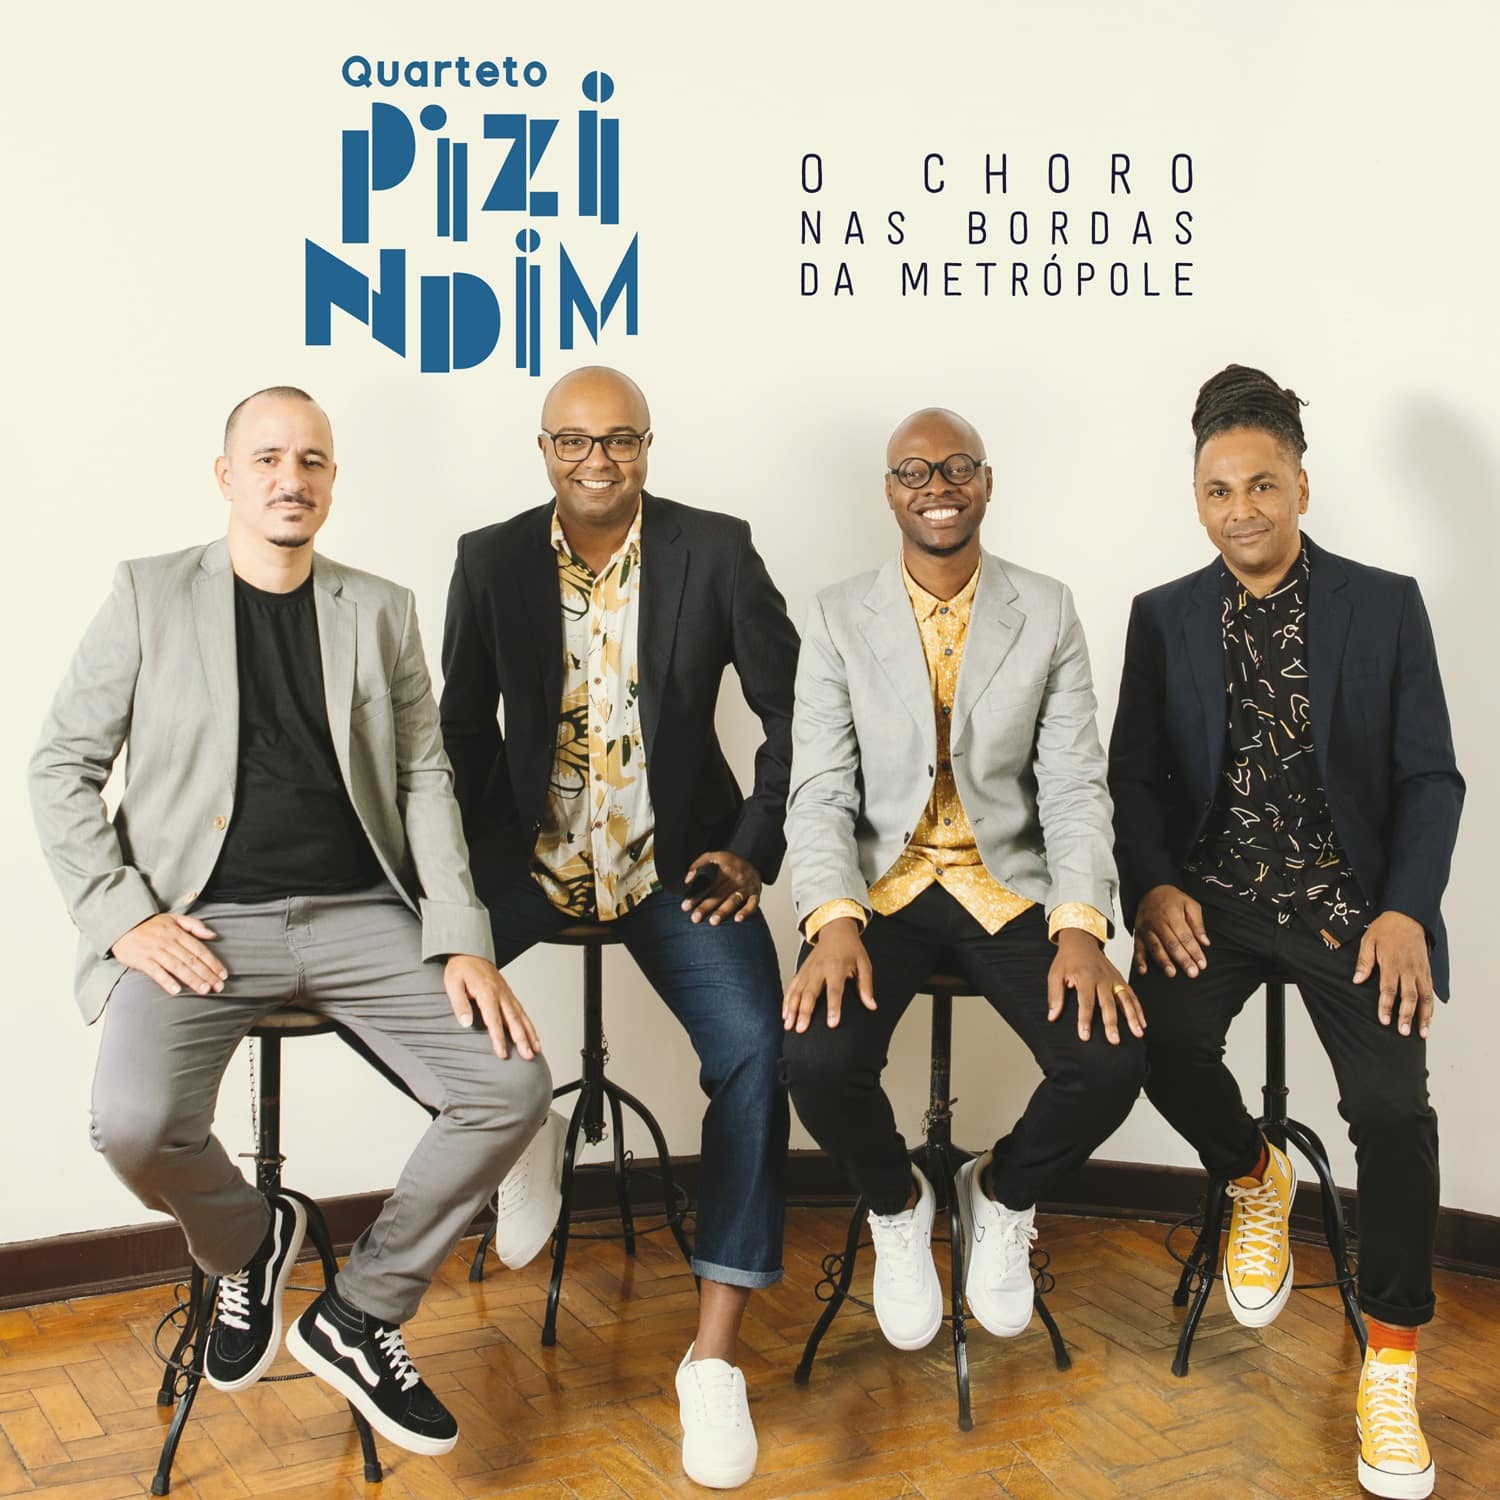 revistaprosaversoearte.com - Quarteto Pizindim lança seu terceiro álbum 'O Choro nas Bordas da Metrópole'